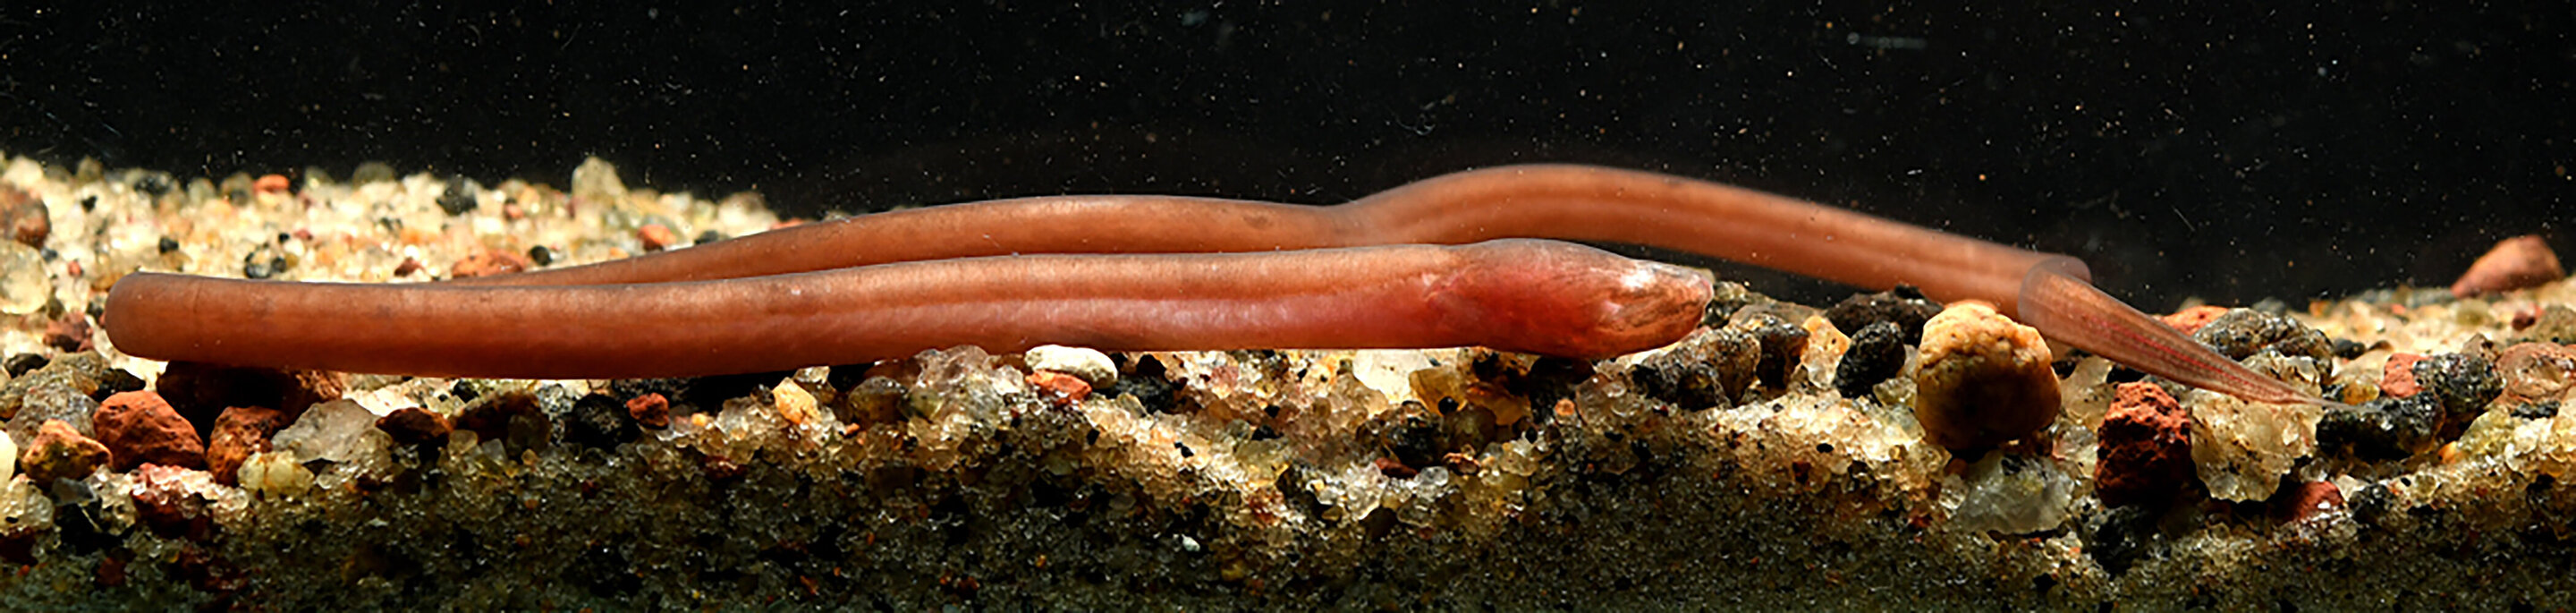 Жителі підземних вод: учені відкрили новий вид риб (ФОТО) - фото 3